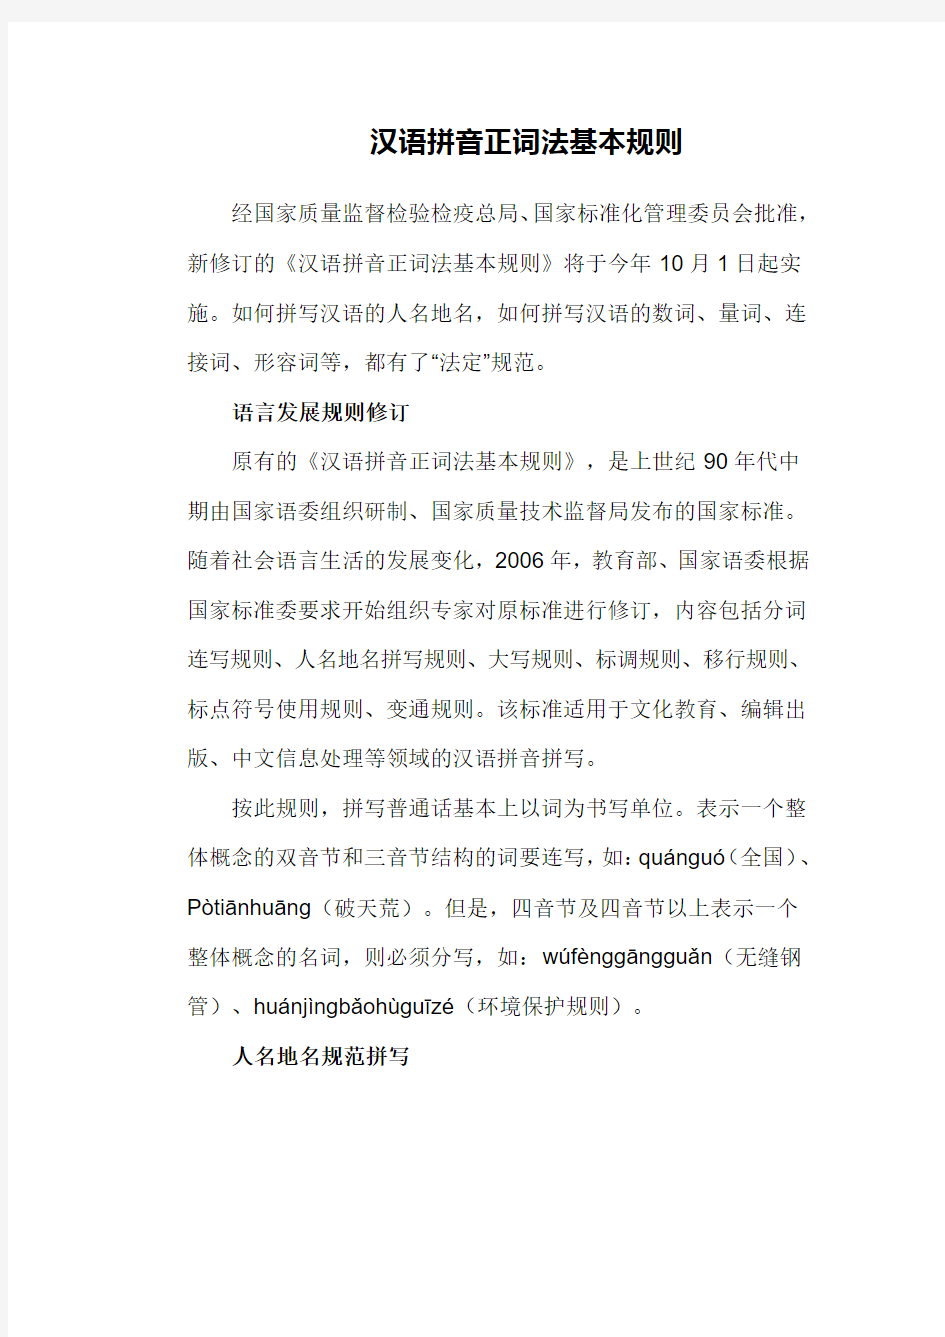 汉语拼音正词法基本规则